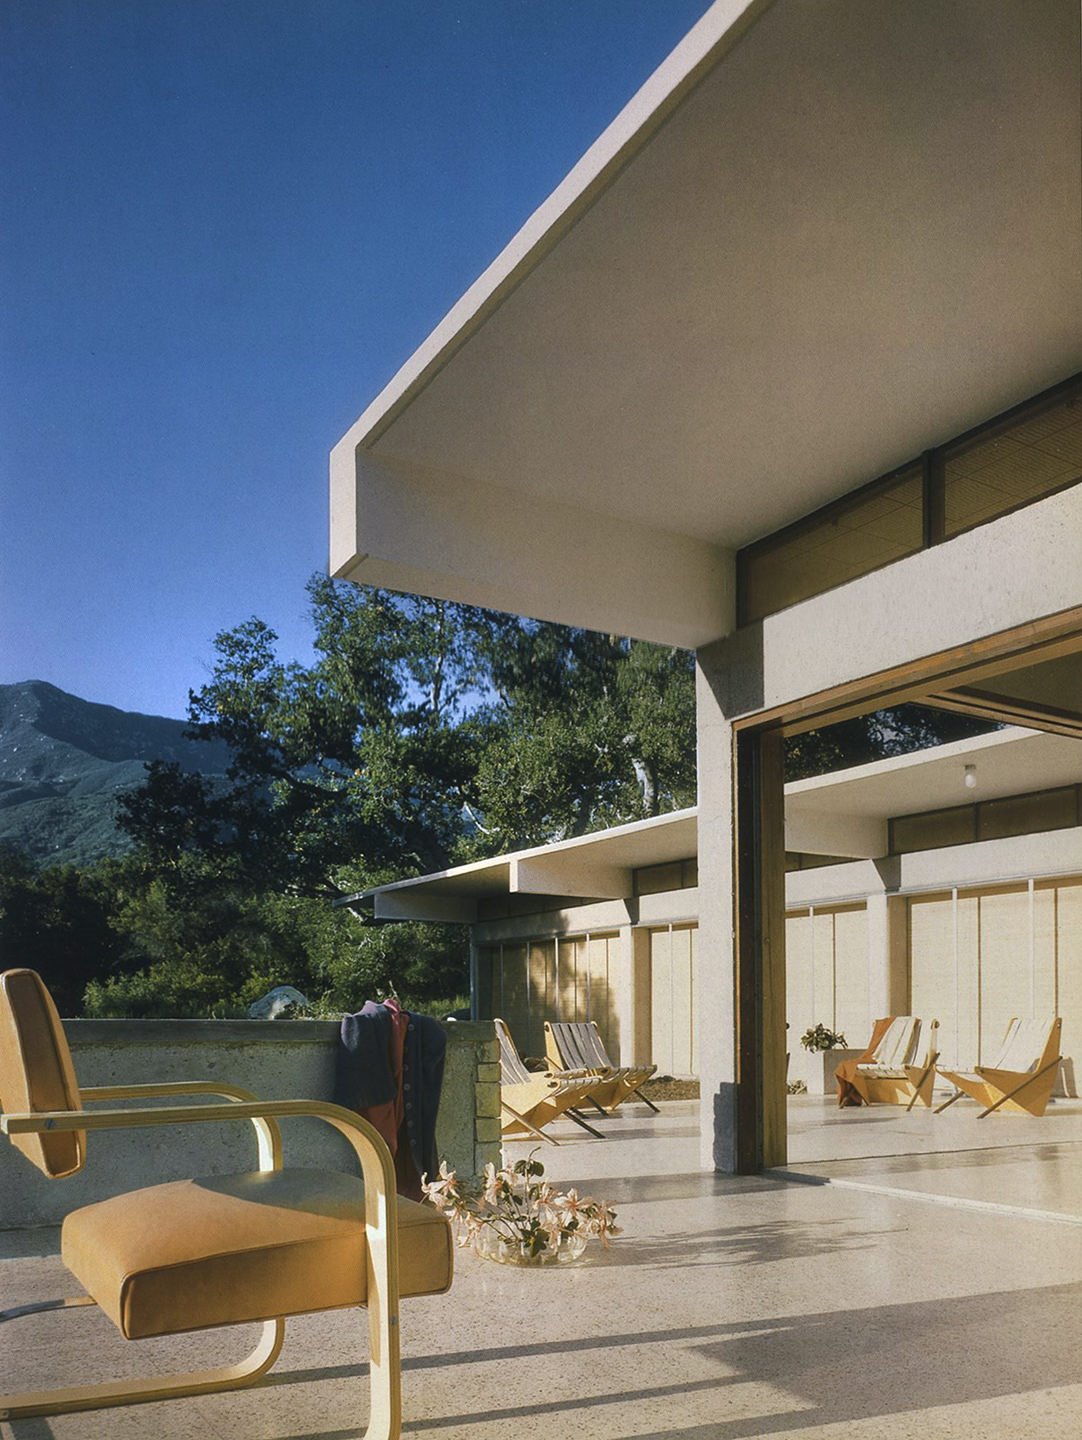 Silla exterior porche Casa en Montecido california diseñada por Richard Neutra